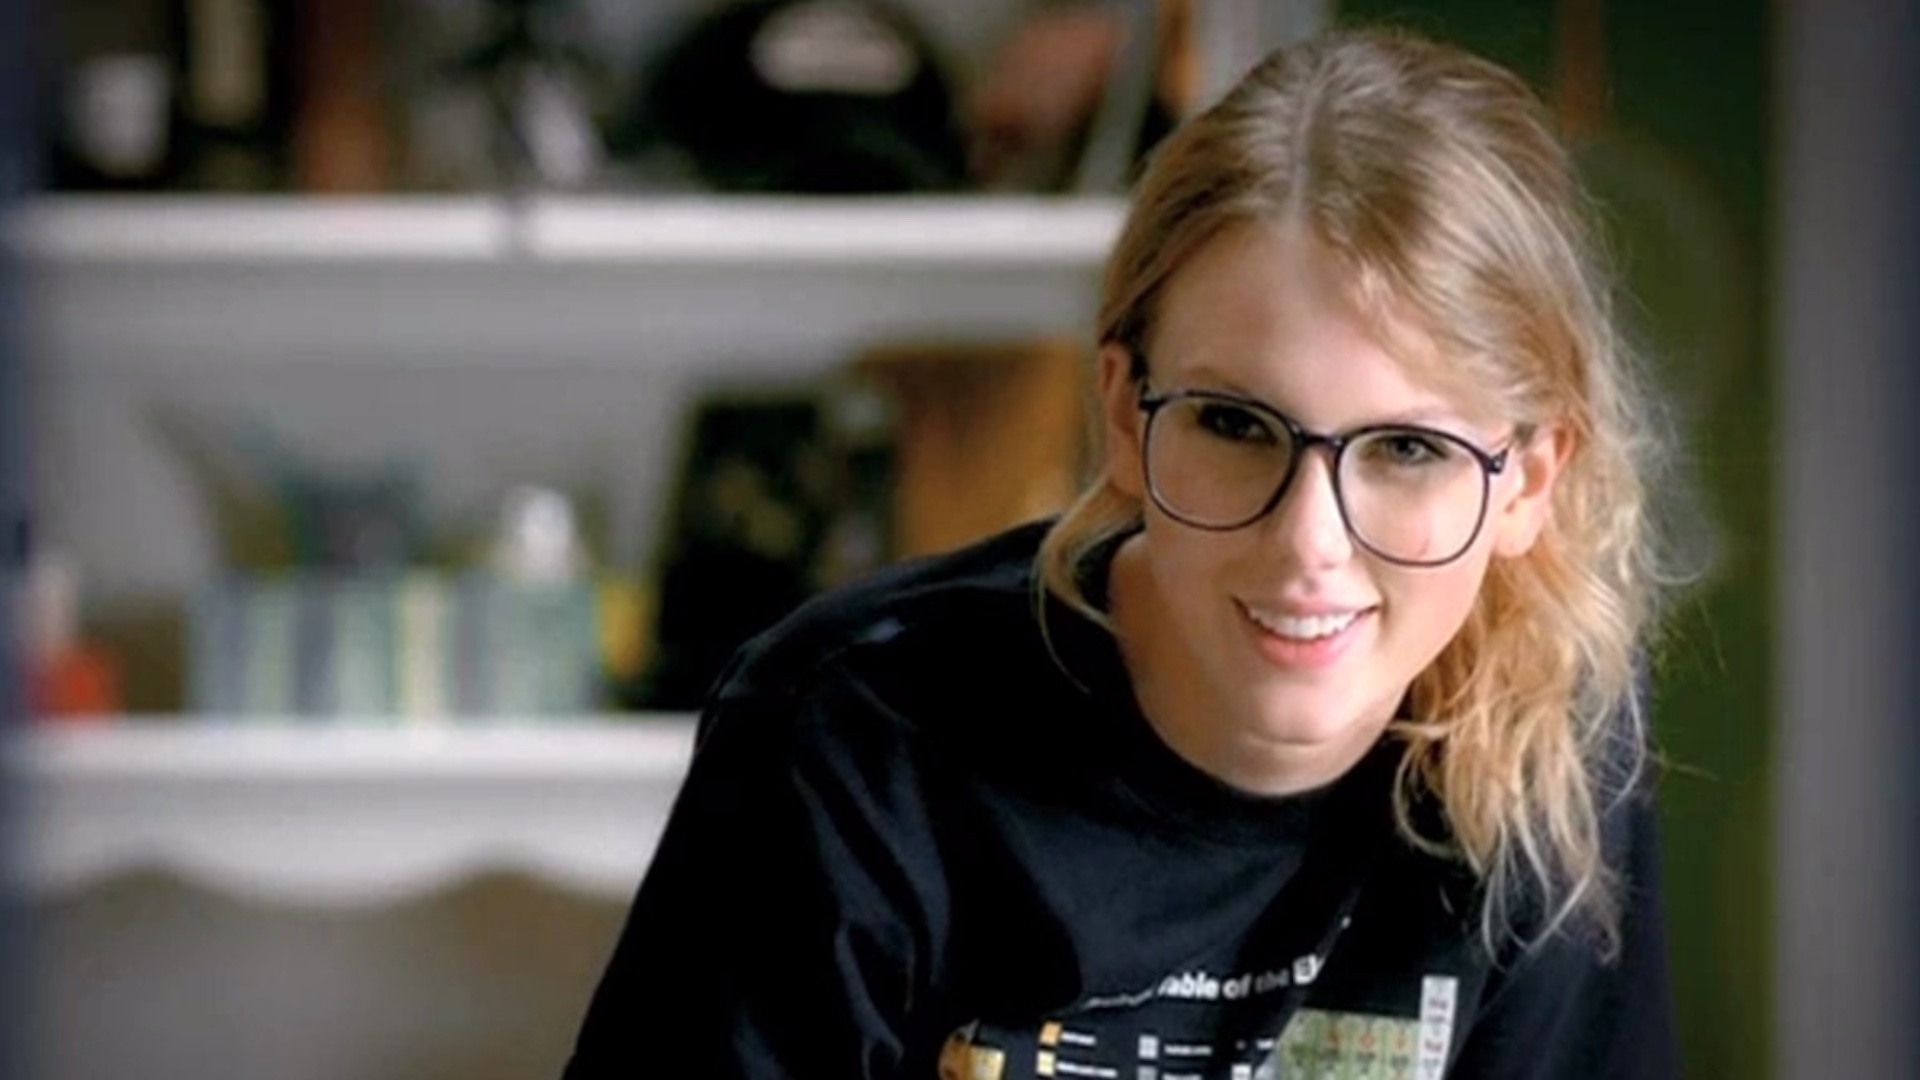 #MañanasX: La Universidad de Nueva York abre curso sobre Taylor Swift